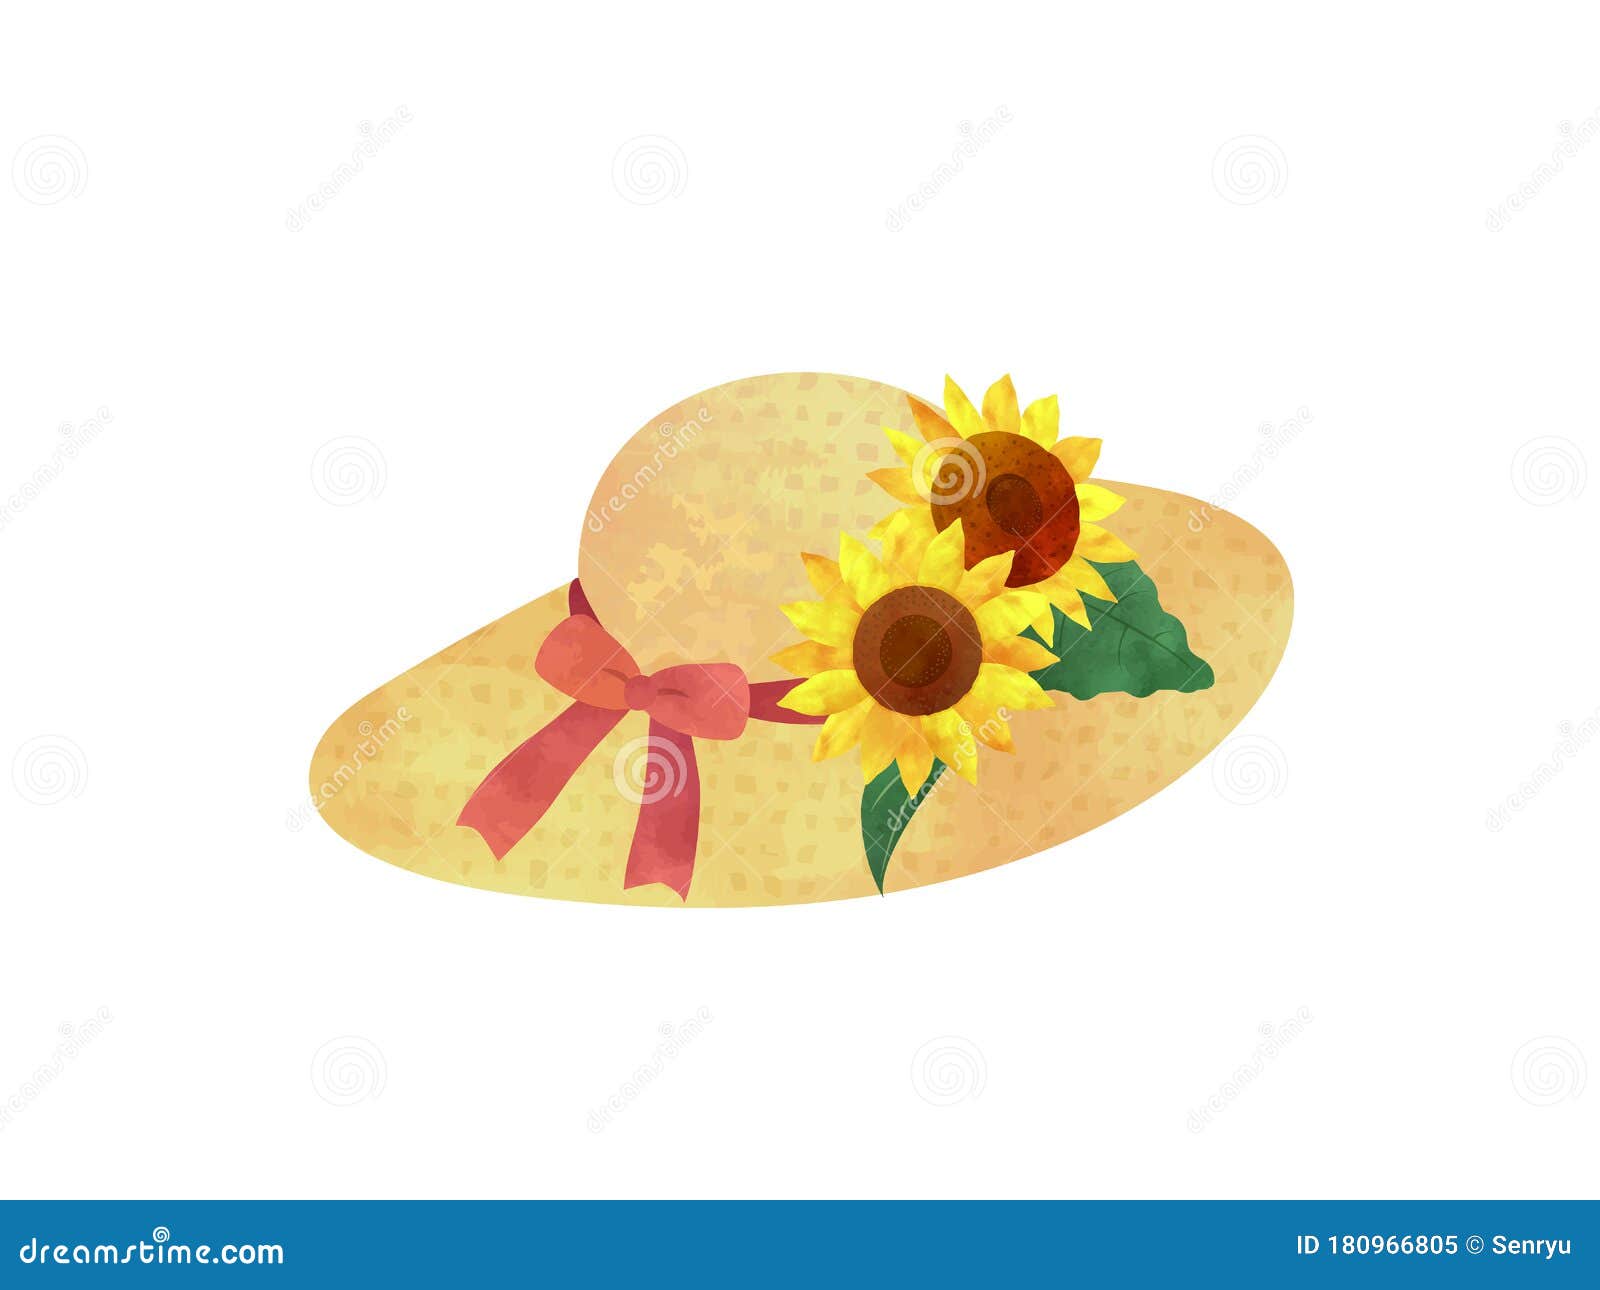 Sunflower hat stock vector. Illustration of sunflower - 180966805